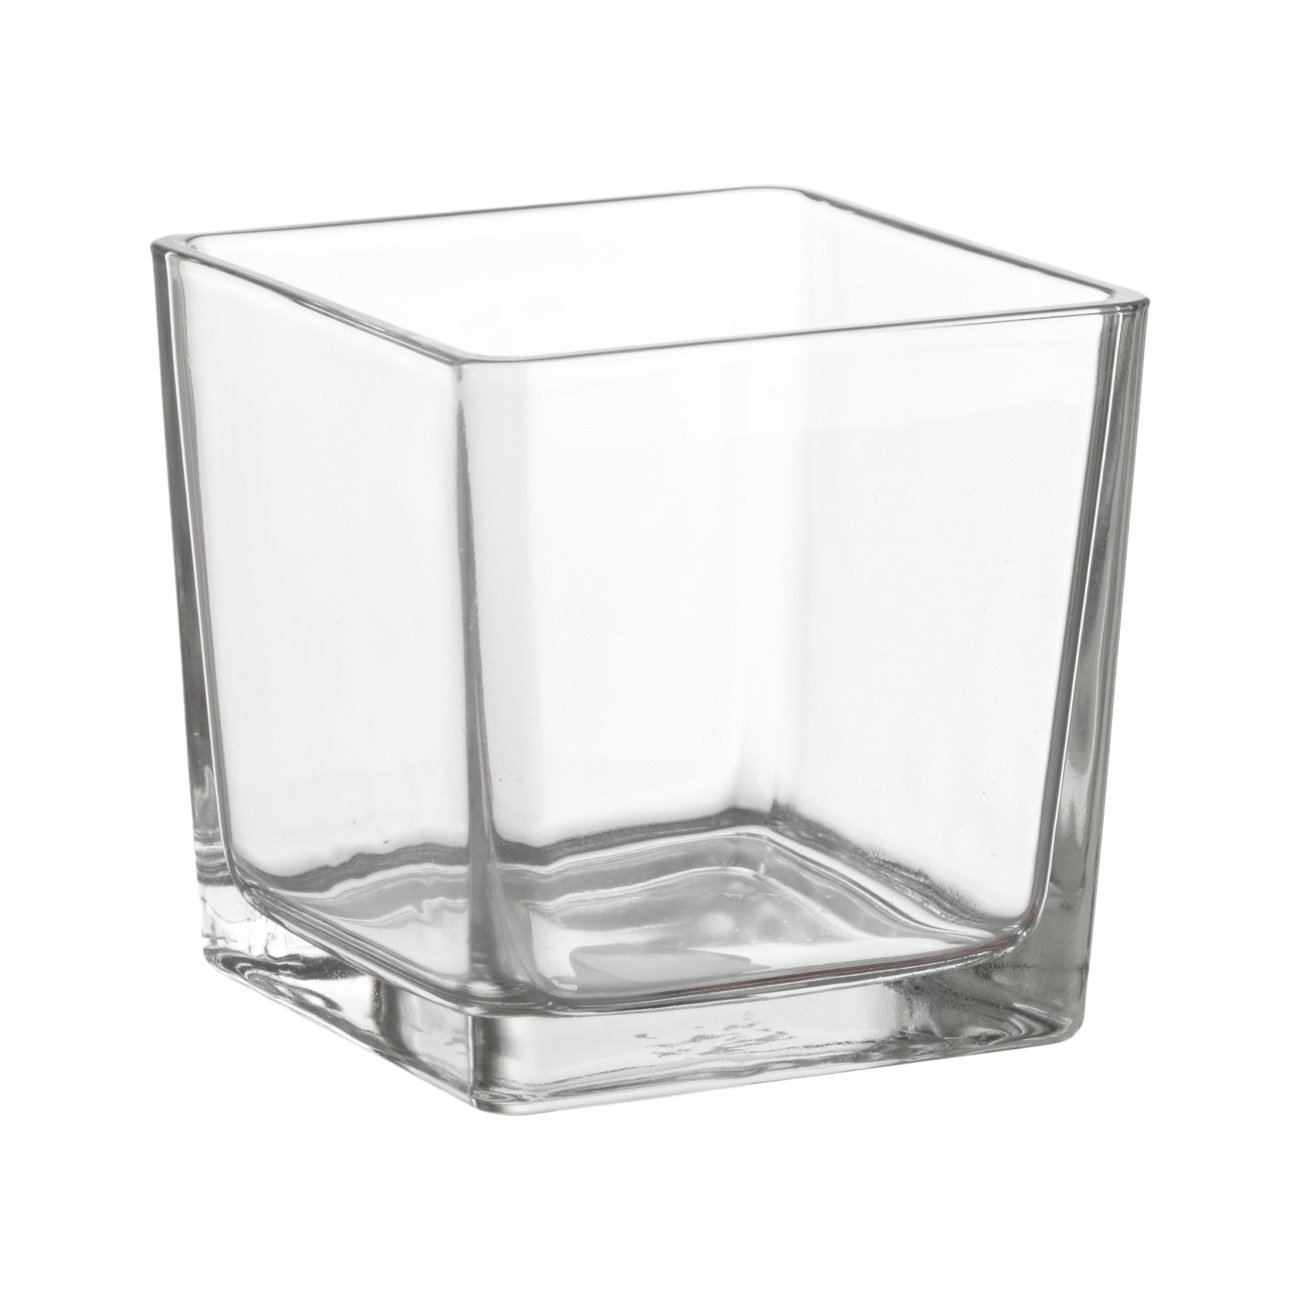 Stiklinė vaza LOTTY, kvadratinė, 12 x 12 cm